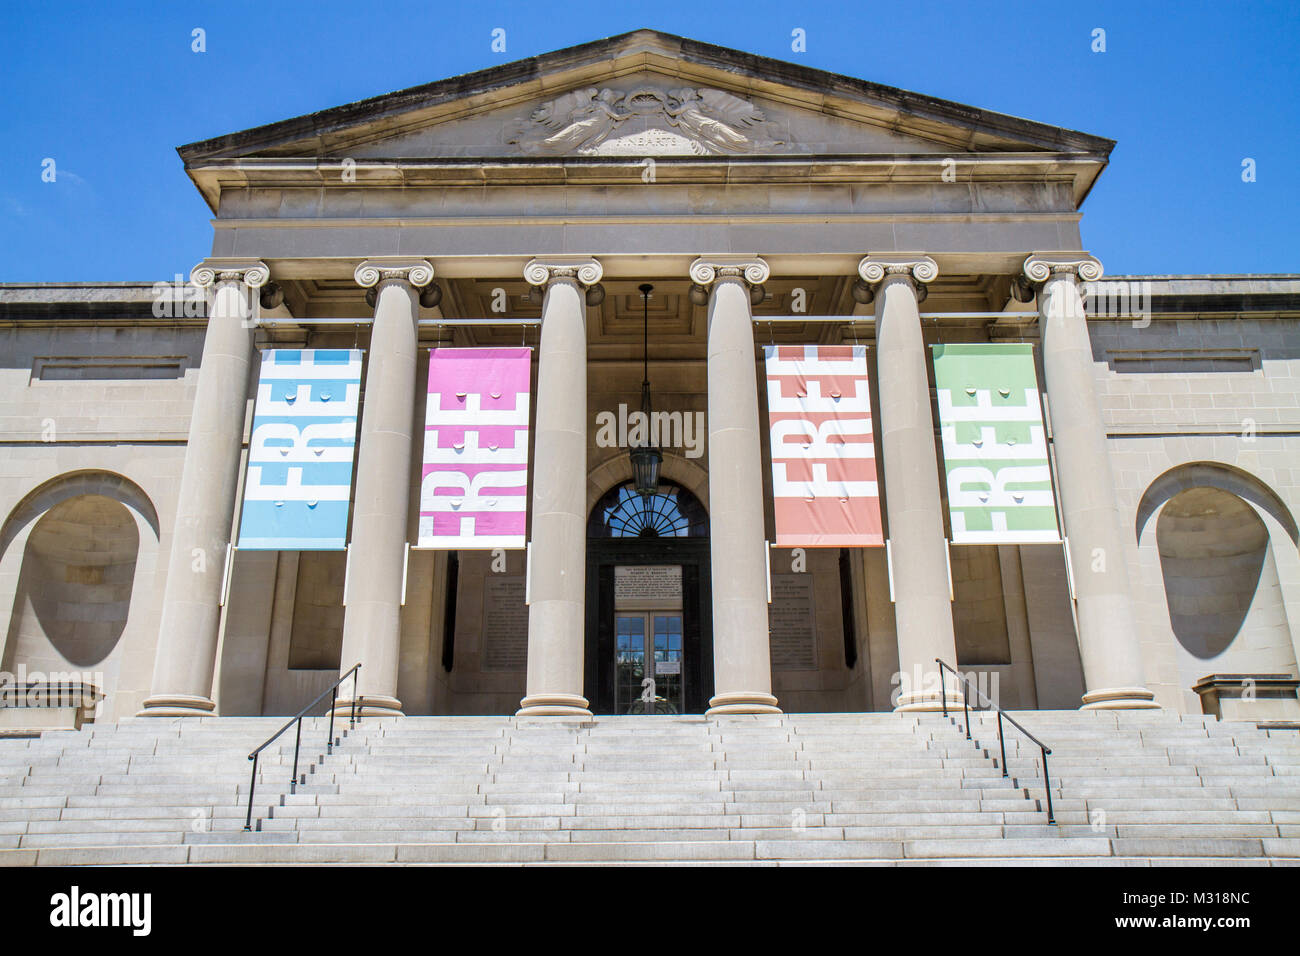 Baltimore Maryland, Wyman Park, Baltimore Museum of Art, neoklassische Architektur, Banner, freier Eintritt, Eingang, Vorderseite, Treppen, Treppe, Säule, Ion Stockfoto